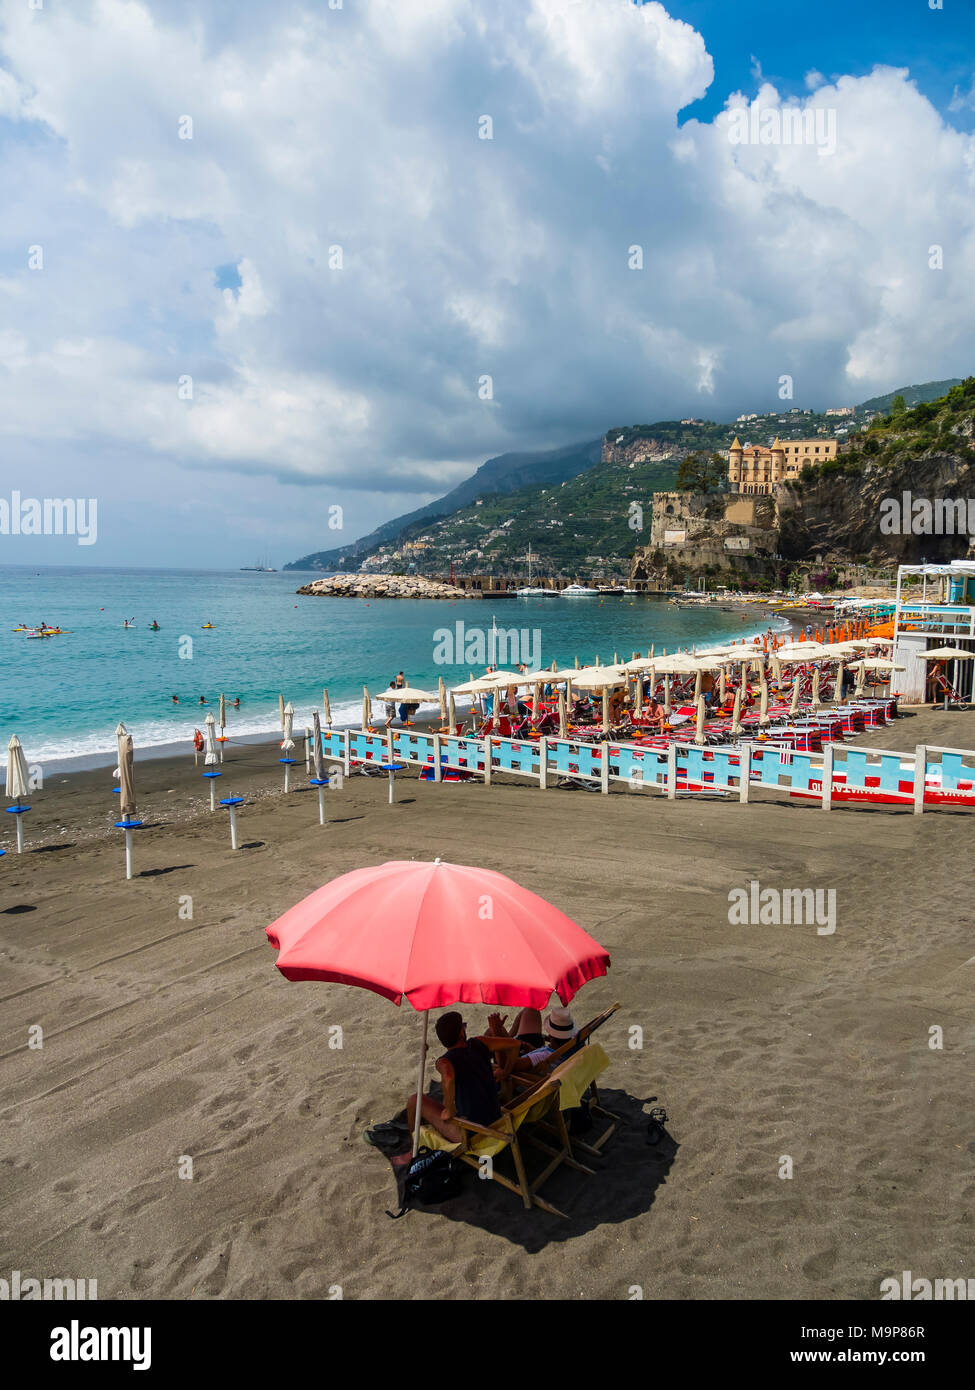 Parasol rouge sur la plage, près de MInori, Province de Salerne, Péninsule de Sorrente, Côte Amalfitaine, Campanie, Italie Banque D'Images